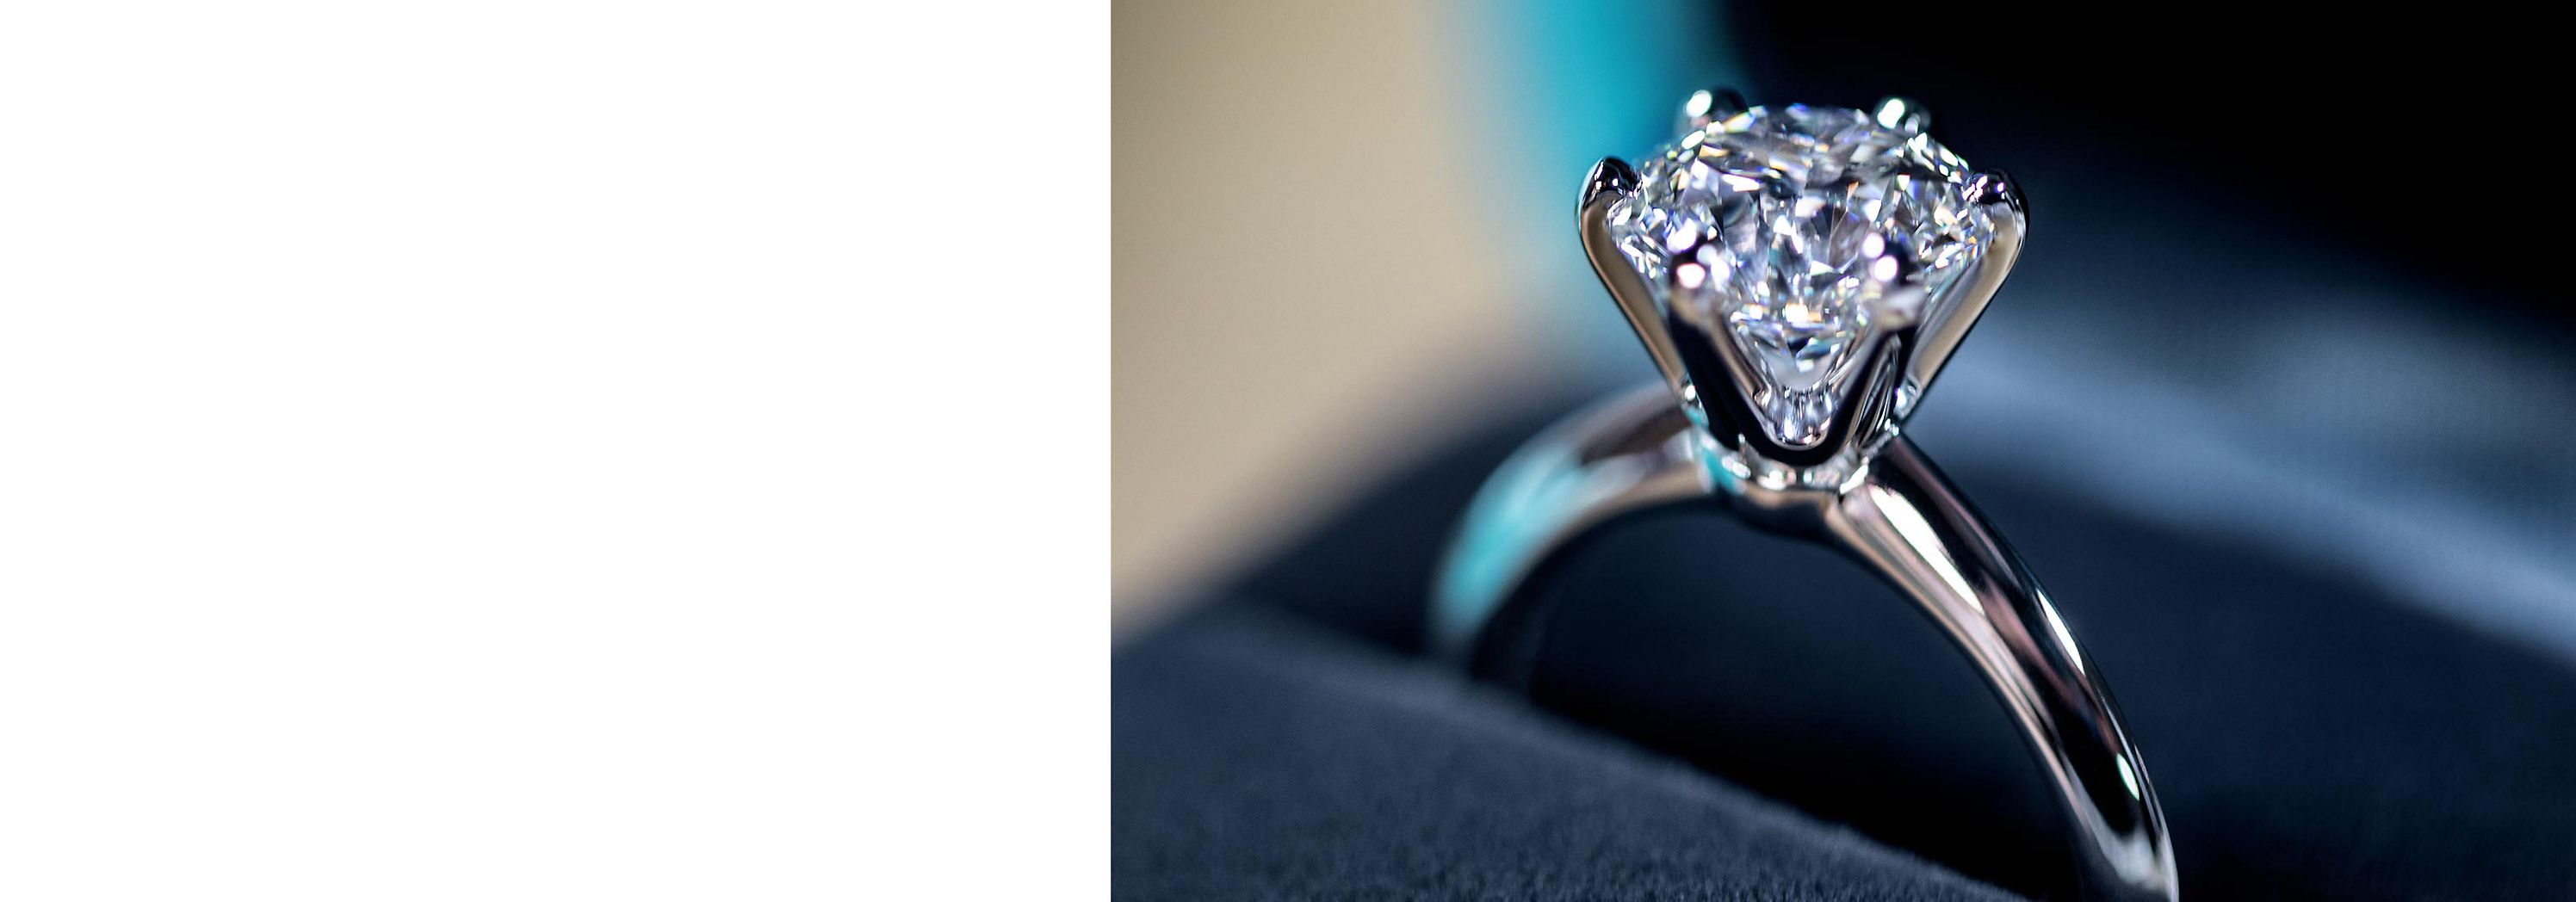 Imitado, mas nunca igualado: Um anel Tiffany